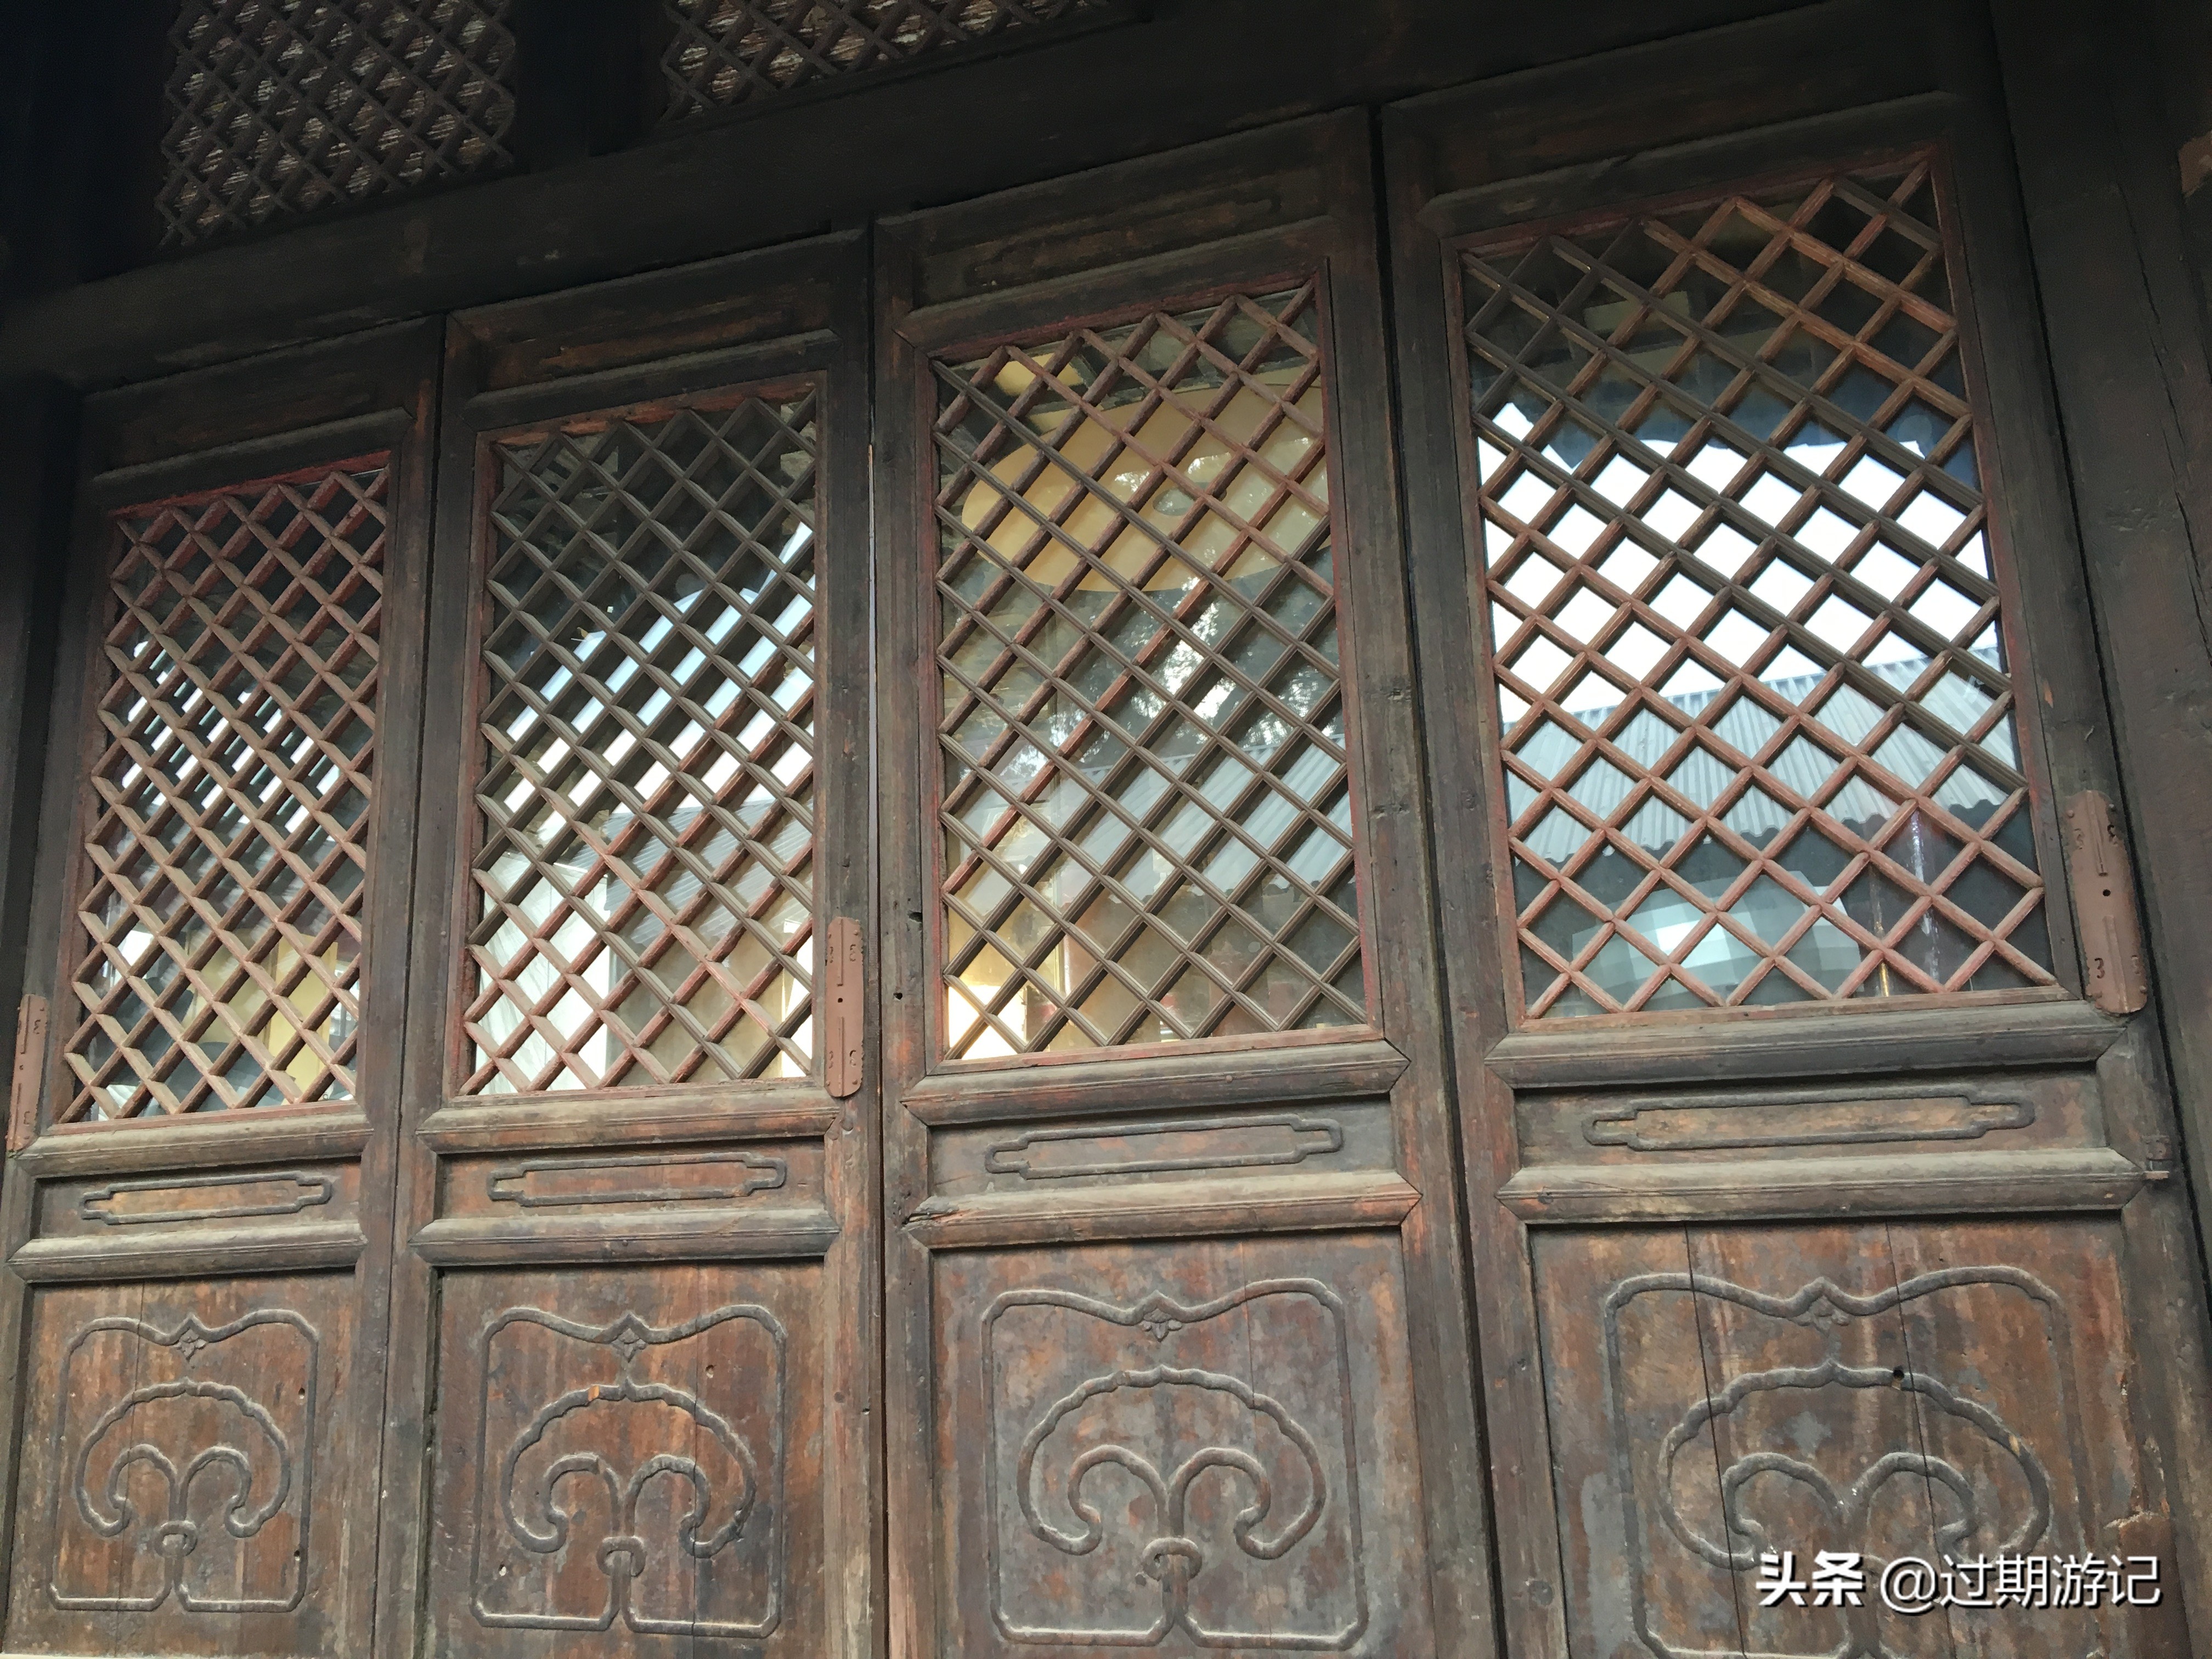 从道教丛林到民俗博物馆 隐于北京闹市间的东岳庙